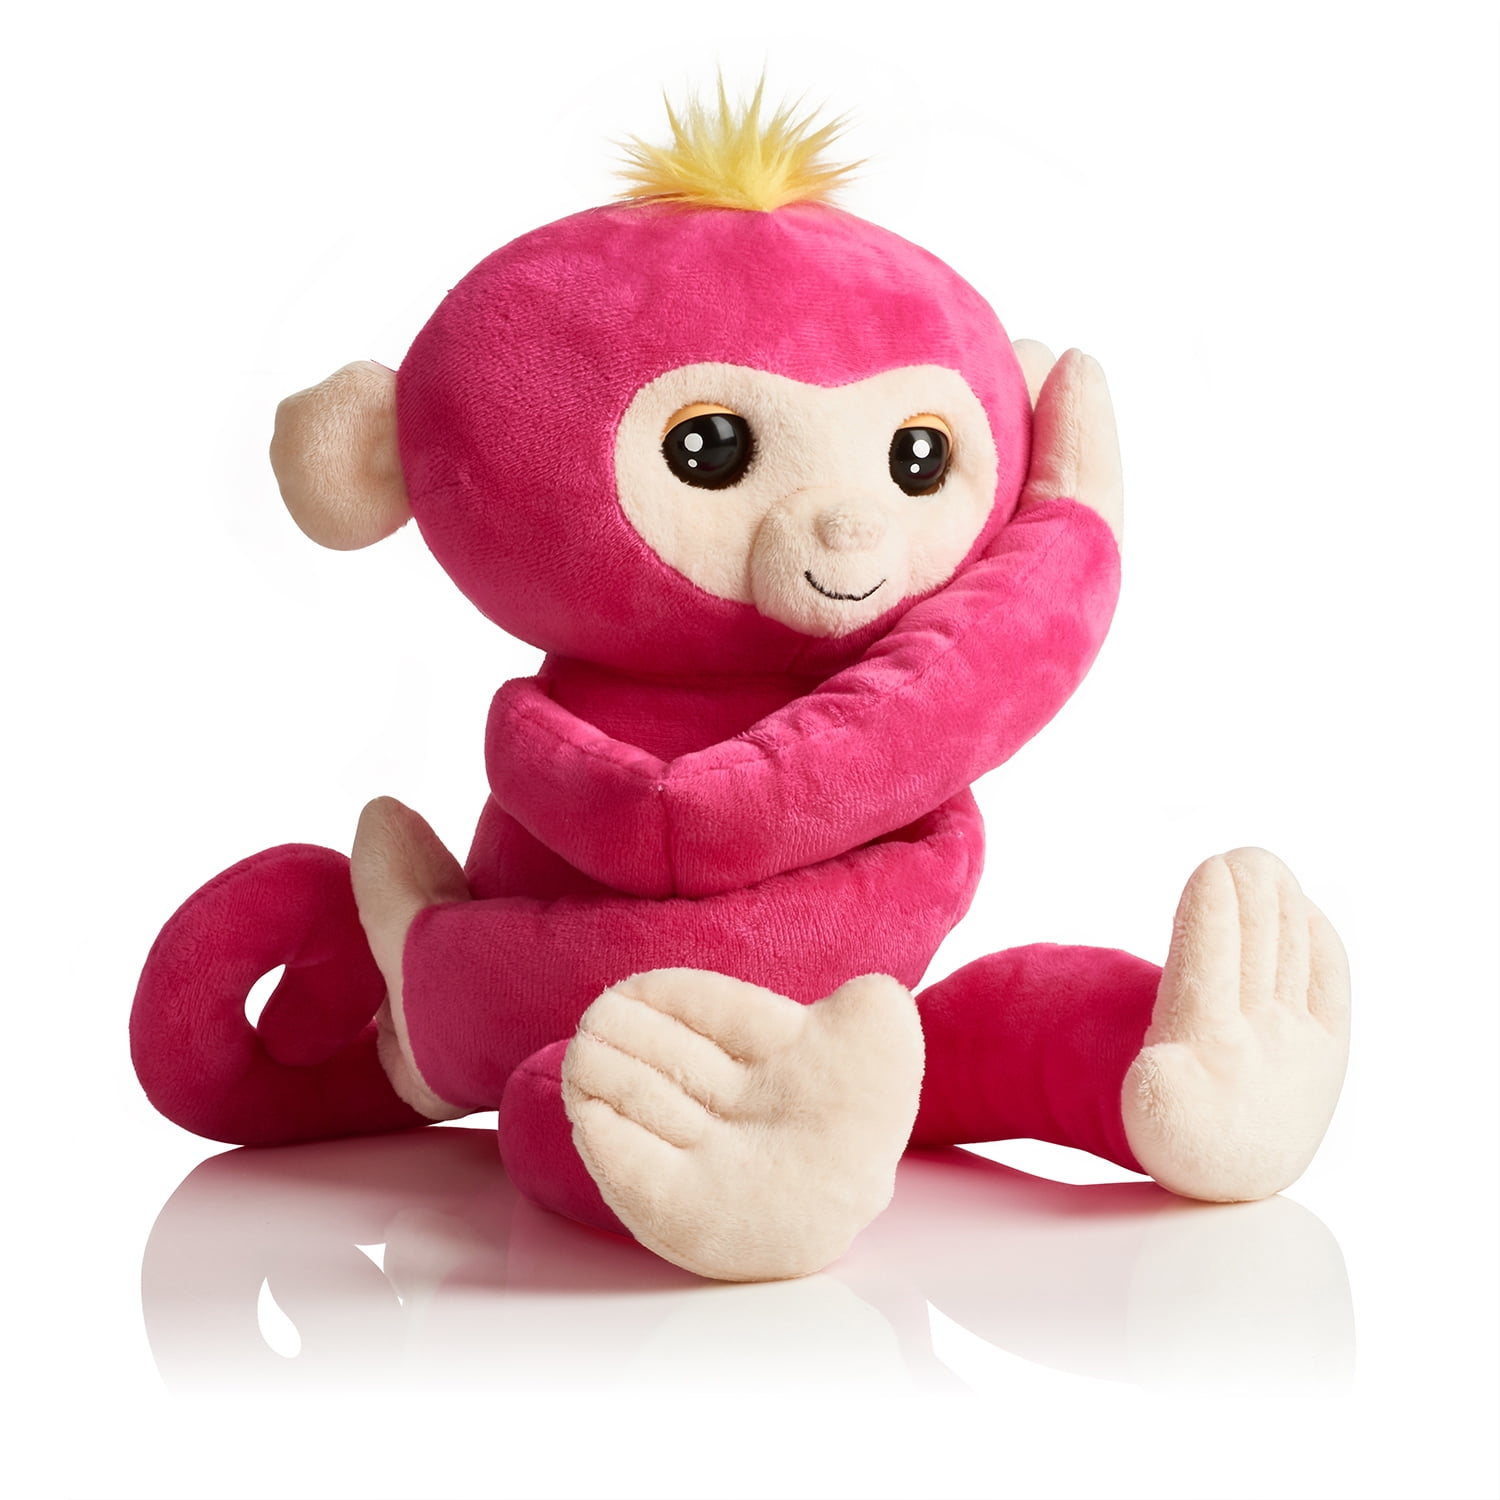 WowWee Baby Monkey Boris Fingerling Figure for sale online 3703 